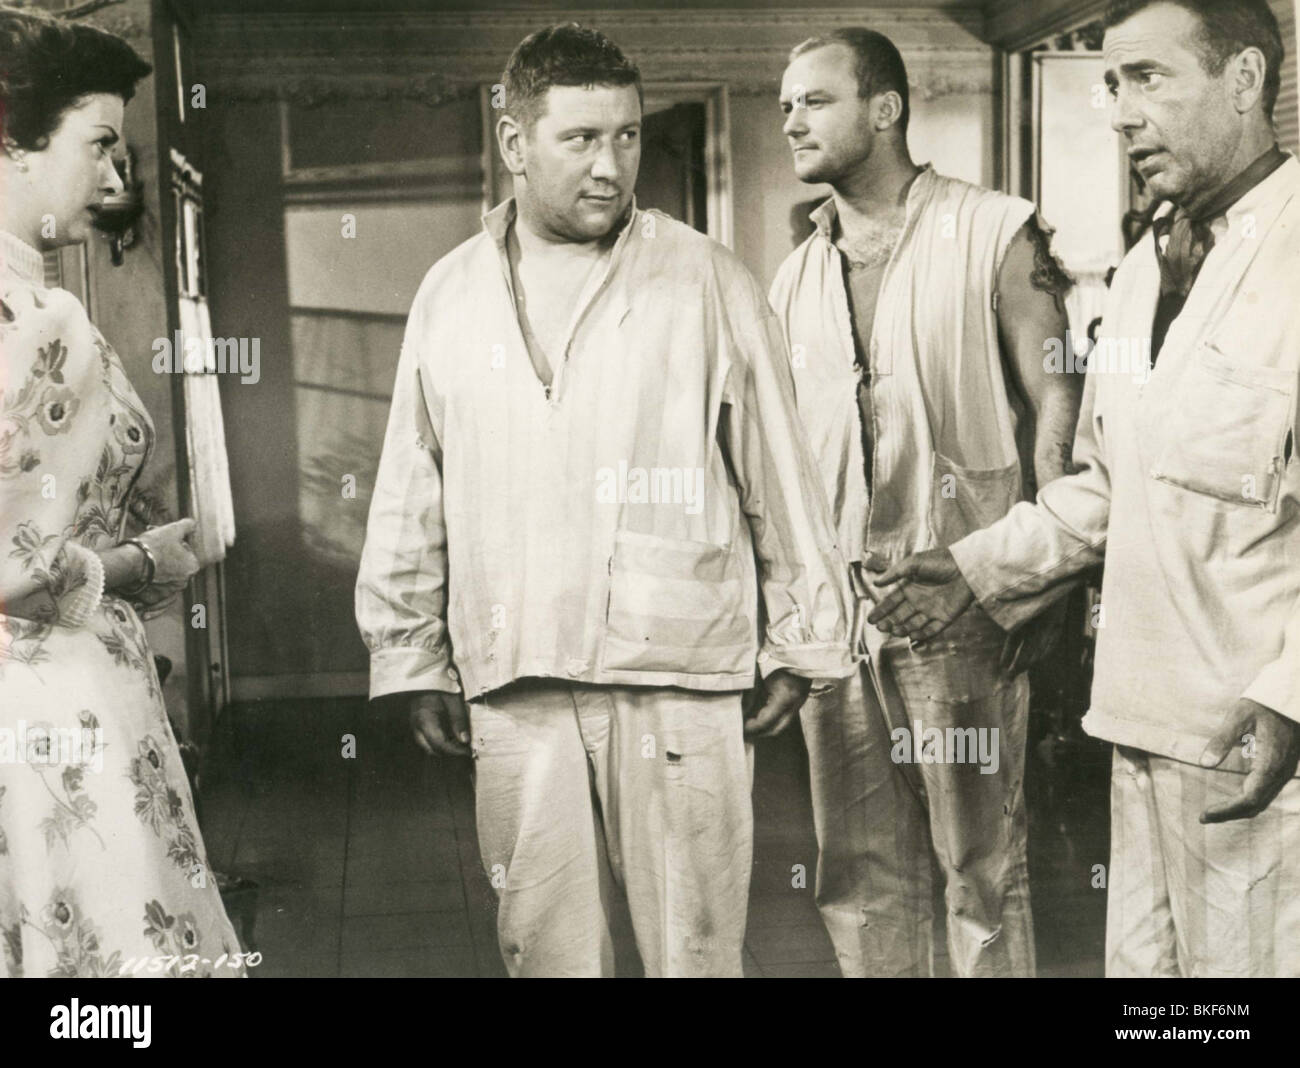 Nosotros no somos ángeles (1954) Peter Ustinov, Aldo Ray, Humphrey Bogart WNAN 002P Foto de stock